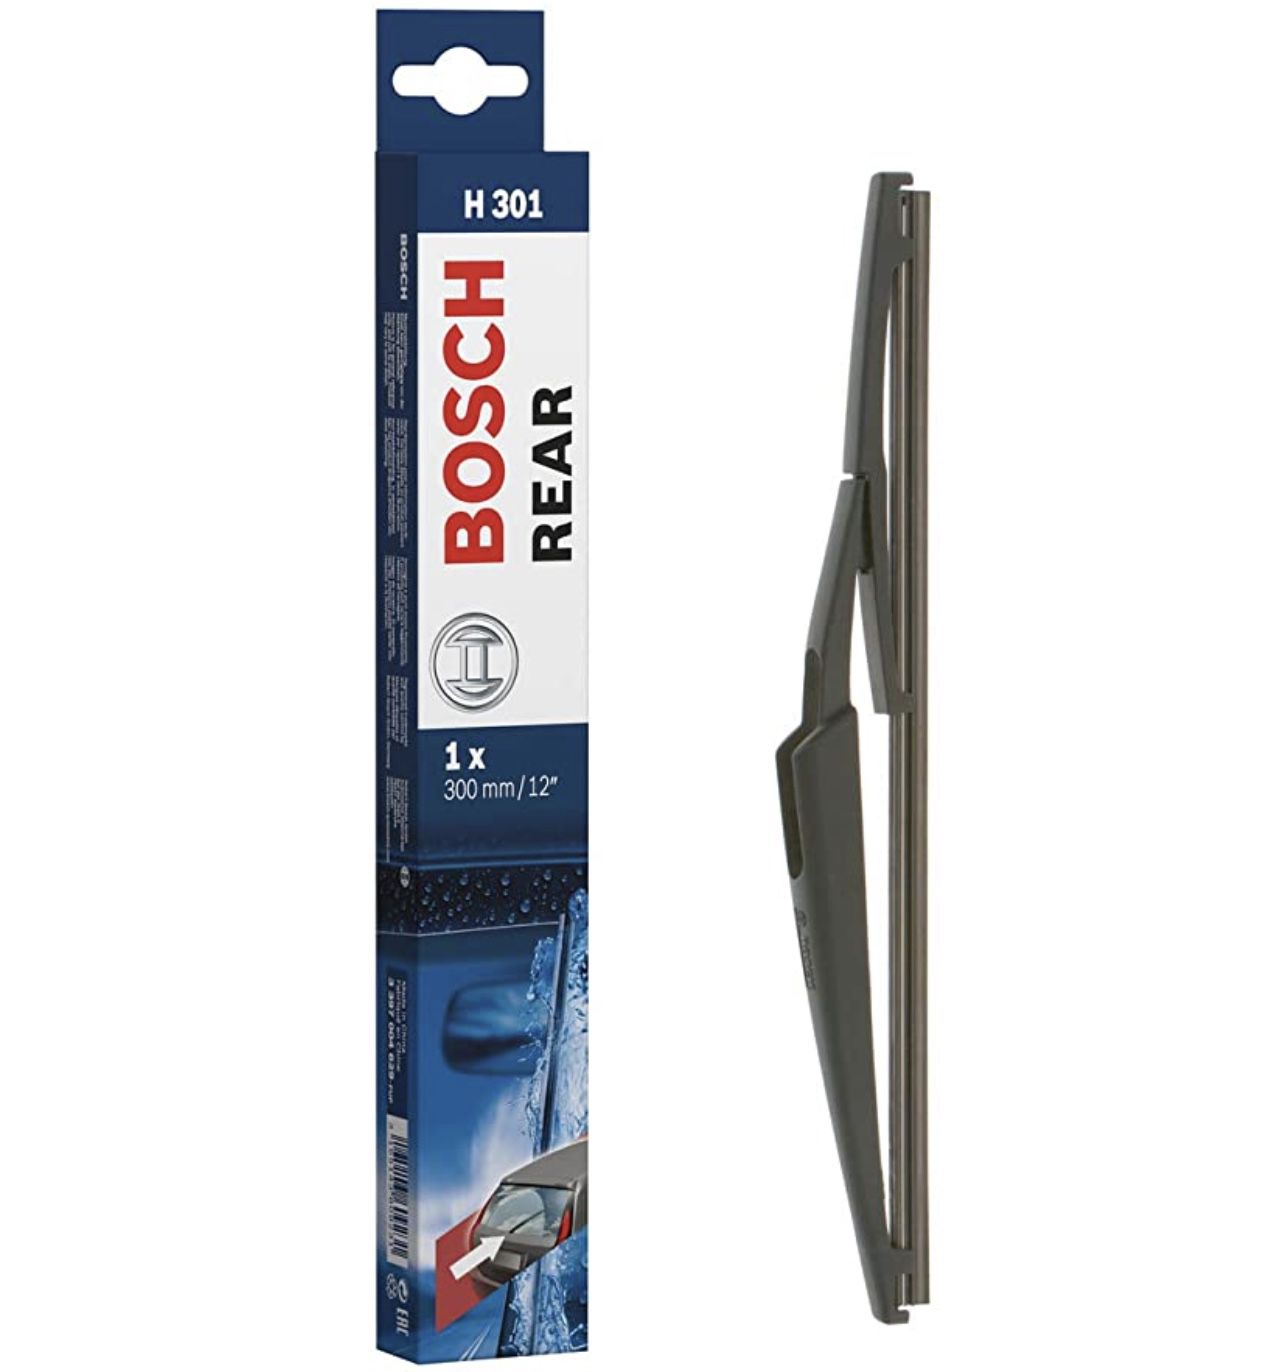 Bosch Rear H301 300mm Heck Scheibenwischer für 4,82€ (statt 10€)   Prime